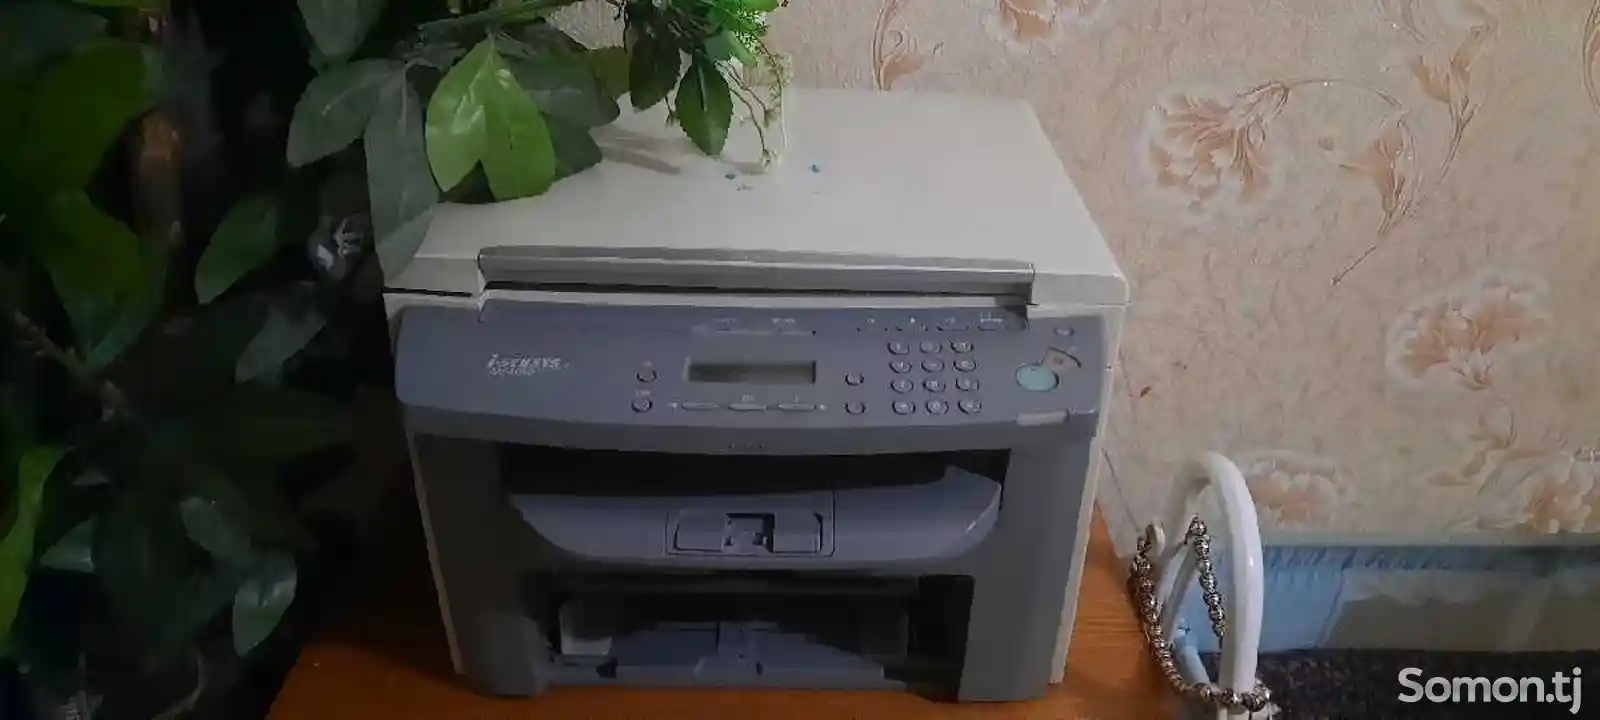 Принтер МФ 4010-2